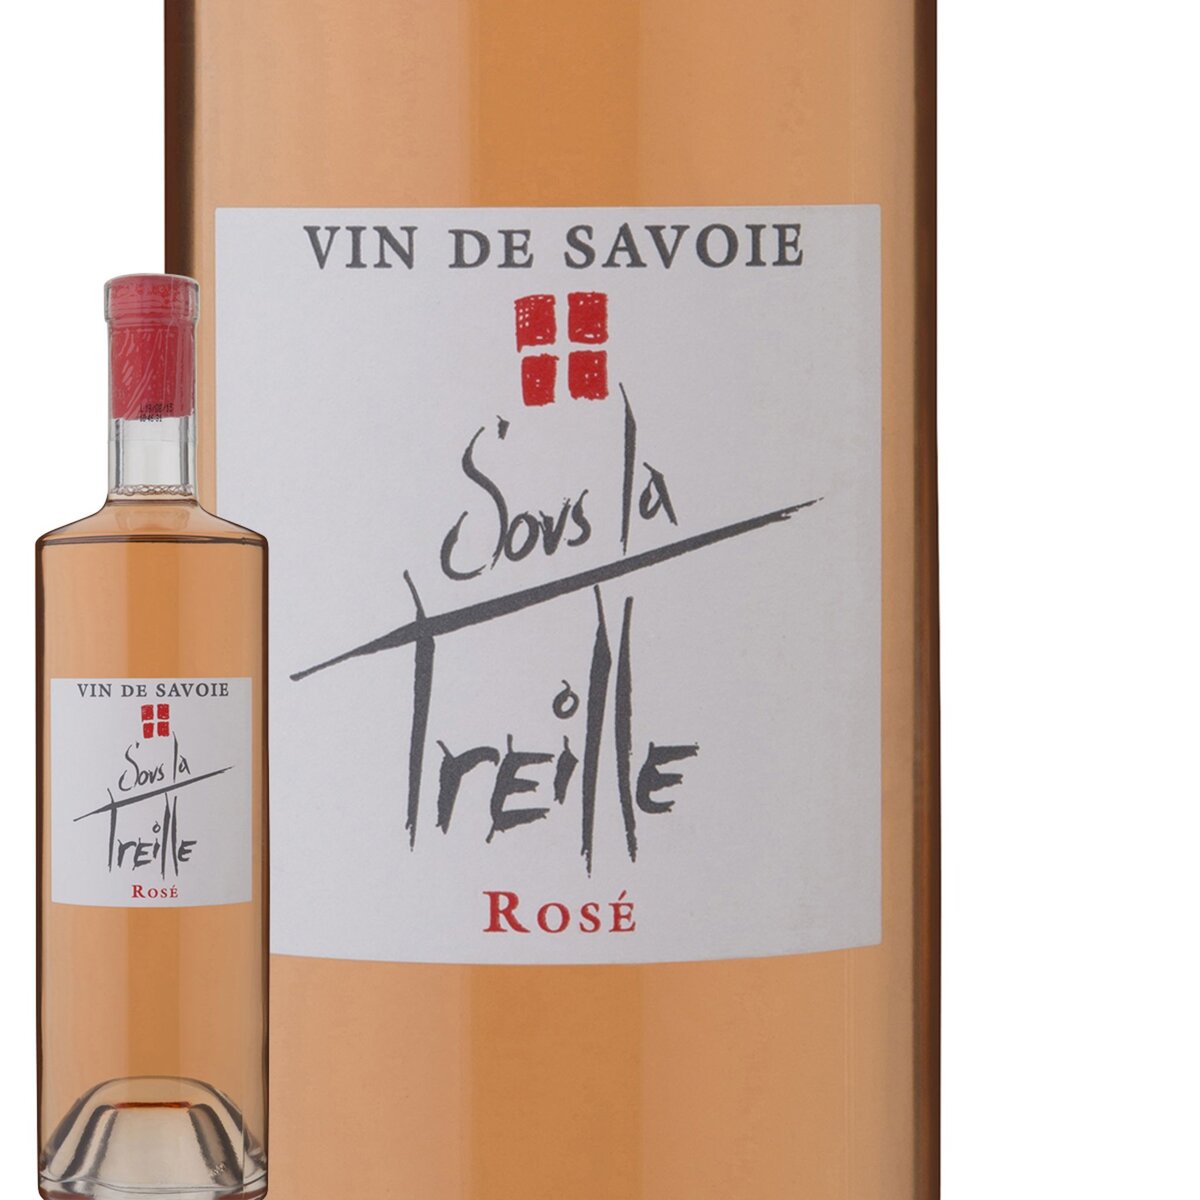 Sous la Treille Vin de Savoie Rosé 2015